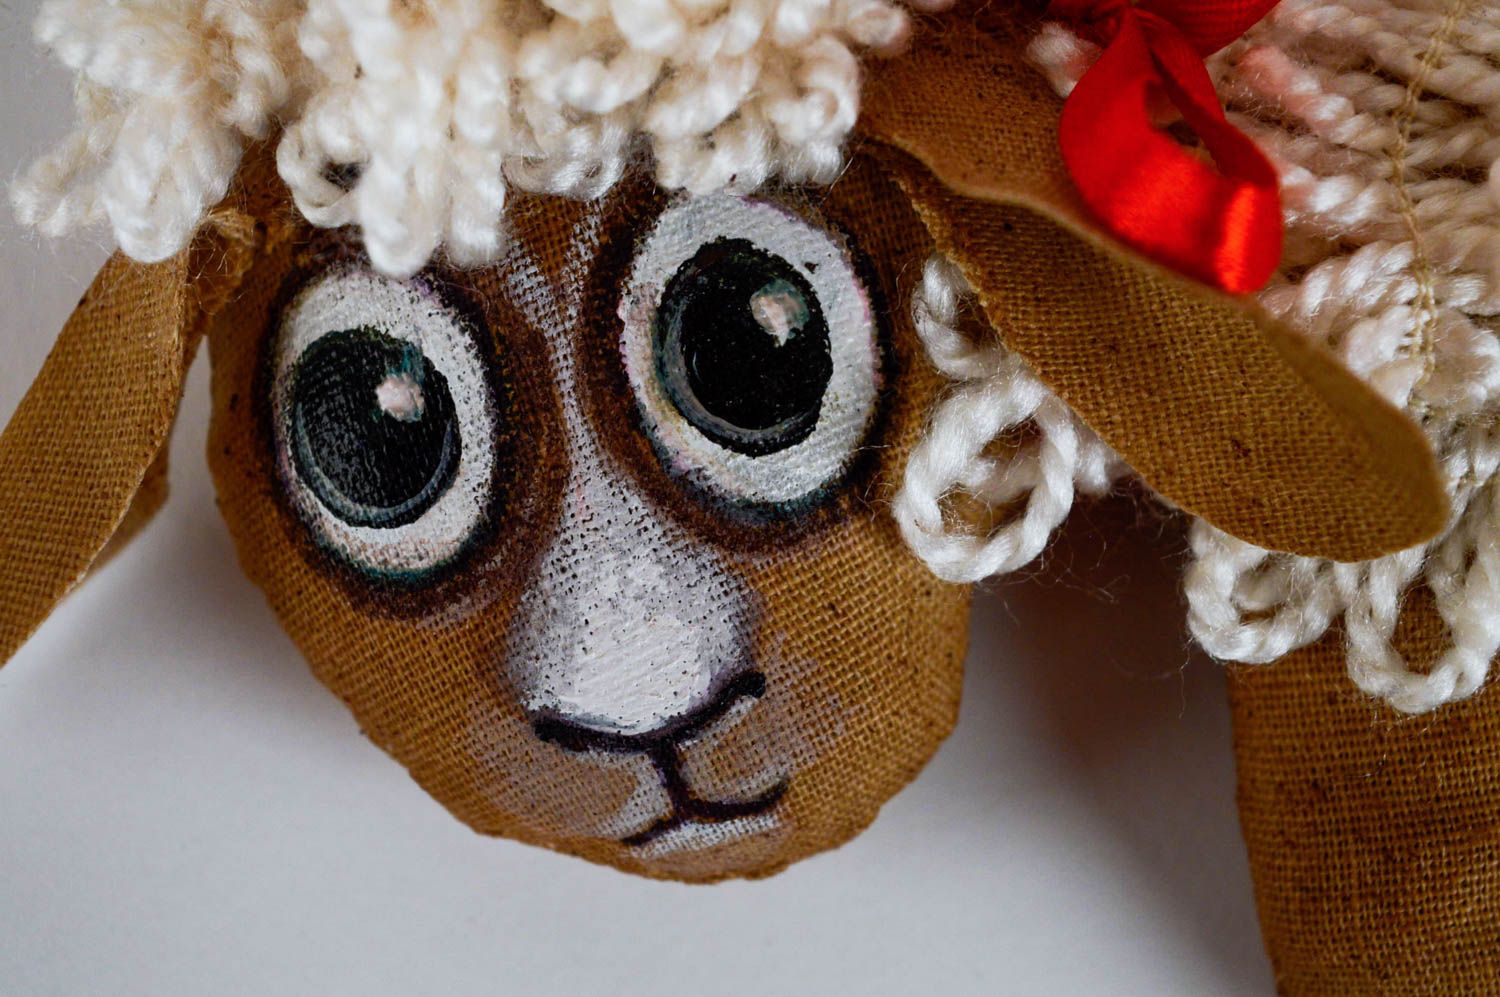 Мягкая игрушка овечка для интерьера дома ароматизированная расписная хенд мейд фото 4